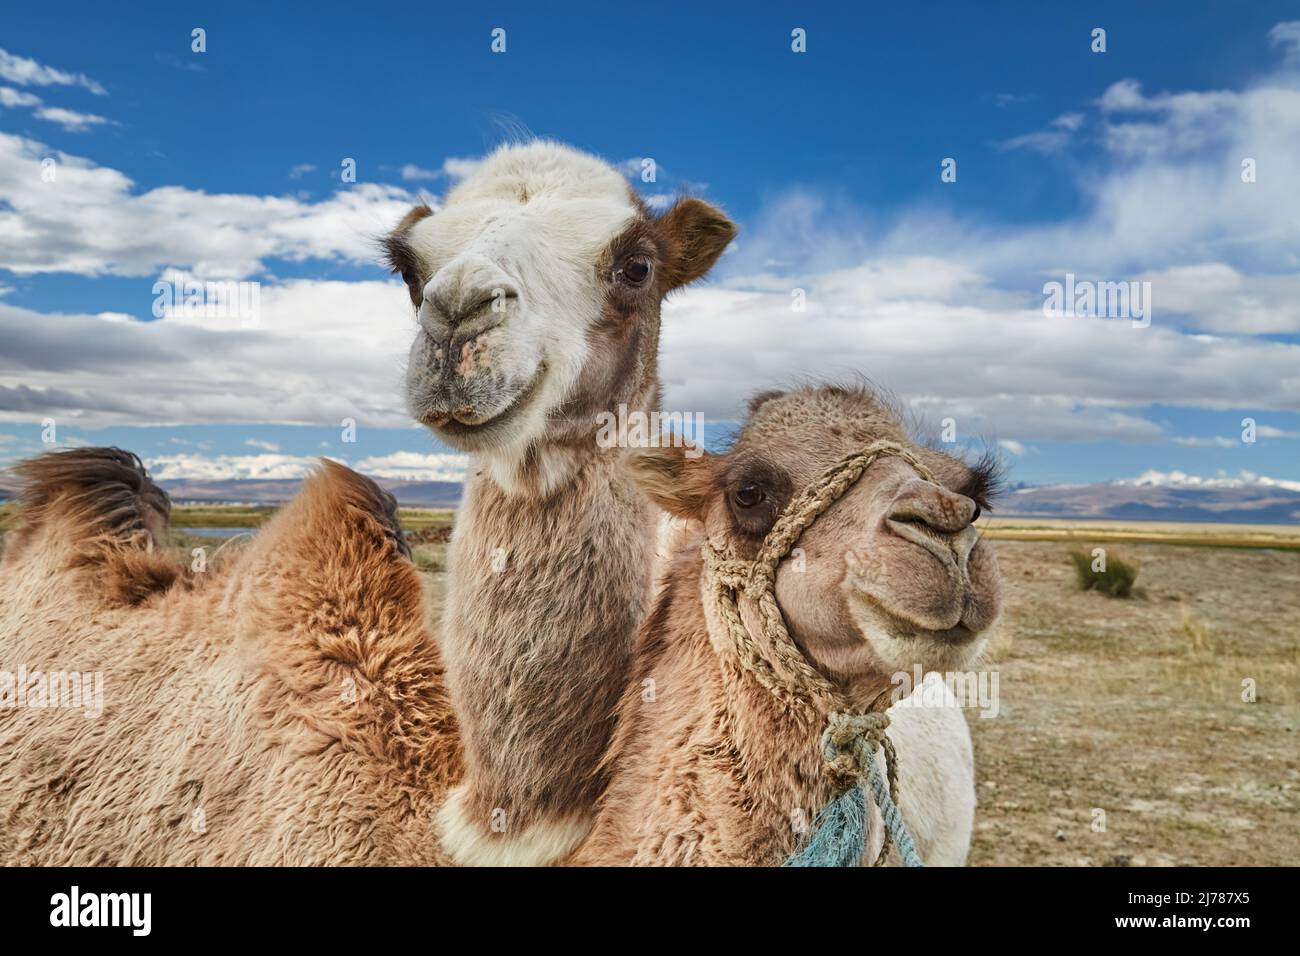 Dos camellos bactrianos en el desierto de Mongolia Foto de stock